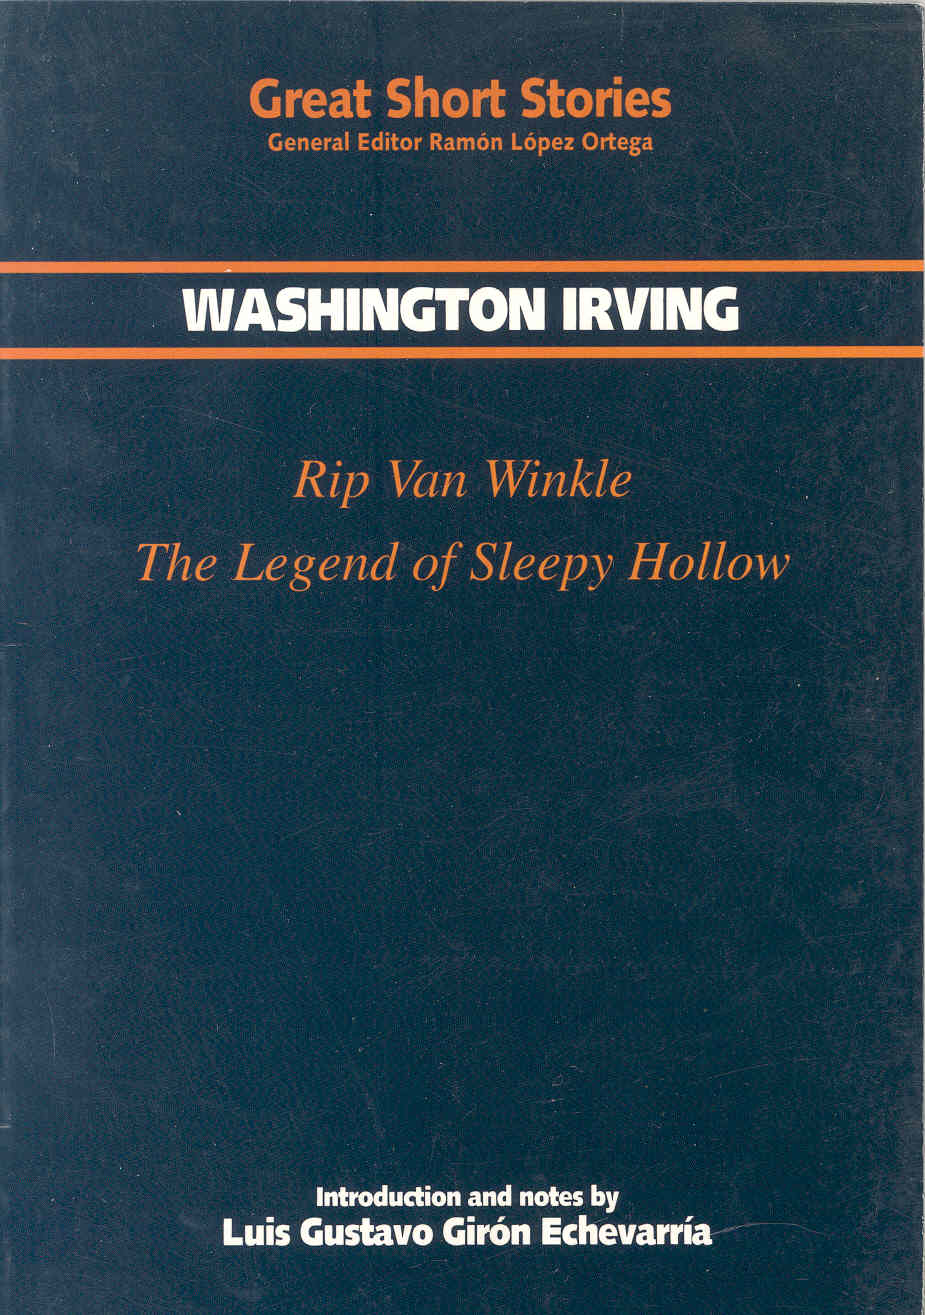 Imagen de portada del libro Rip Van Winkle. The legend of Sleepy Halow